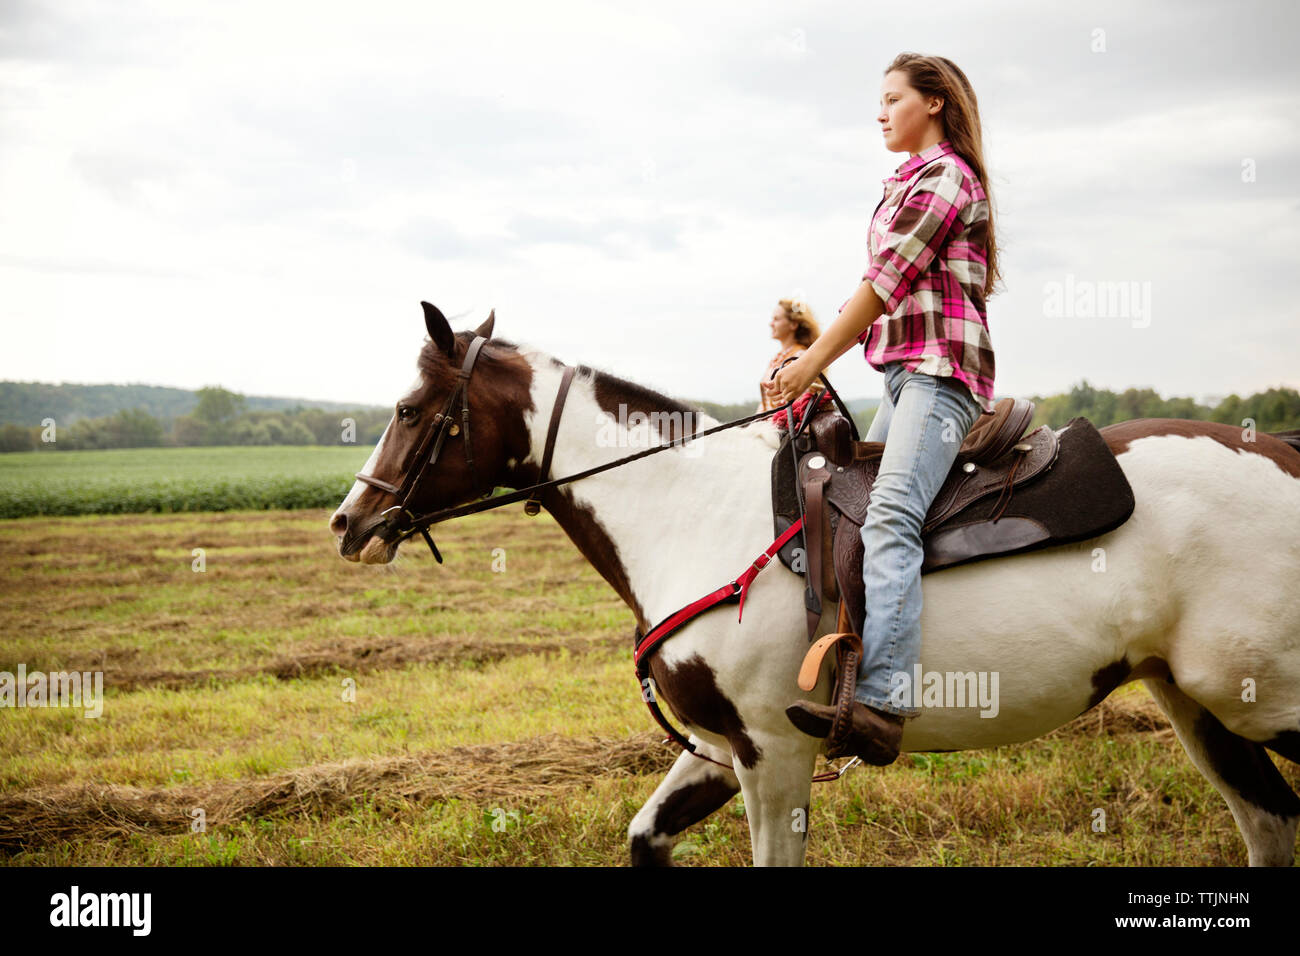 Vue latérale des cowgirls équitation à cheval Banque D'Images